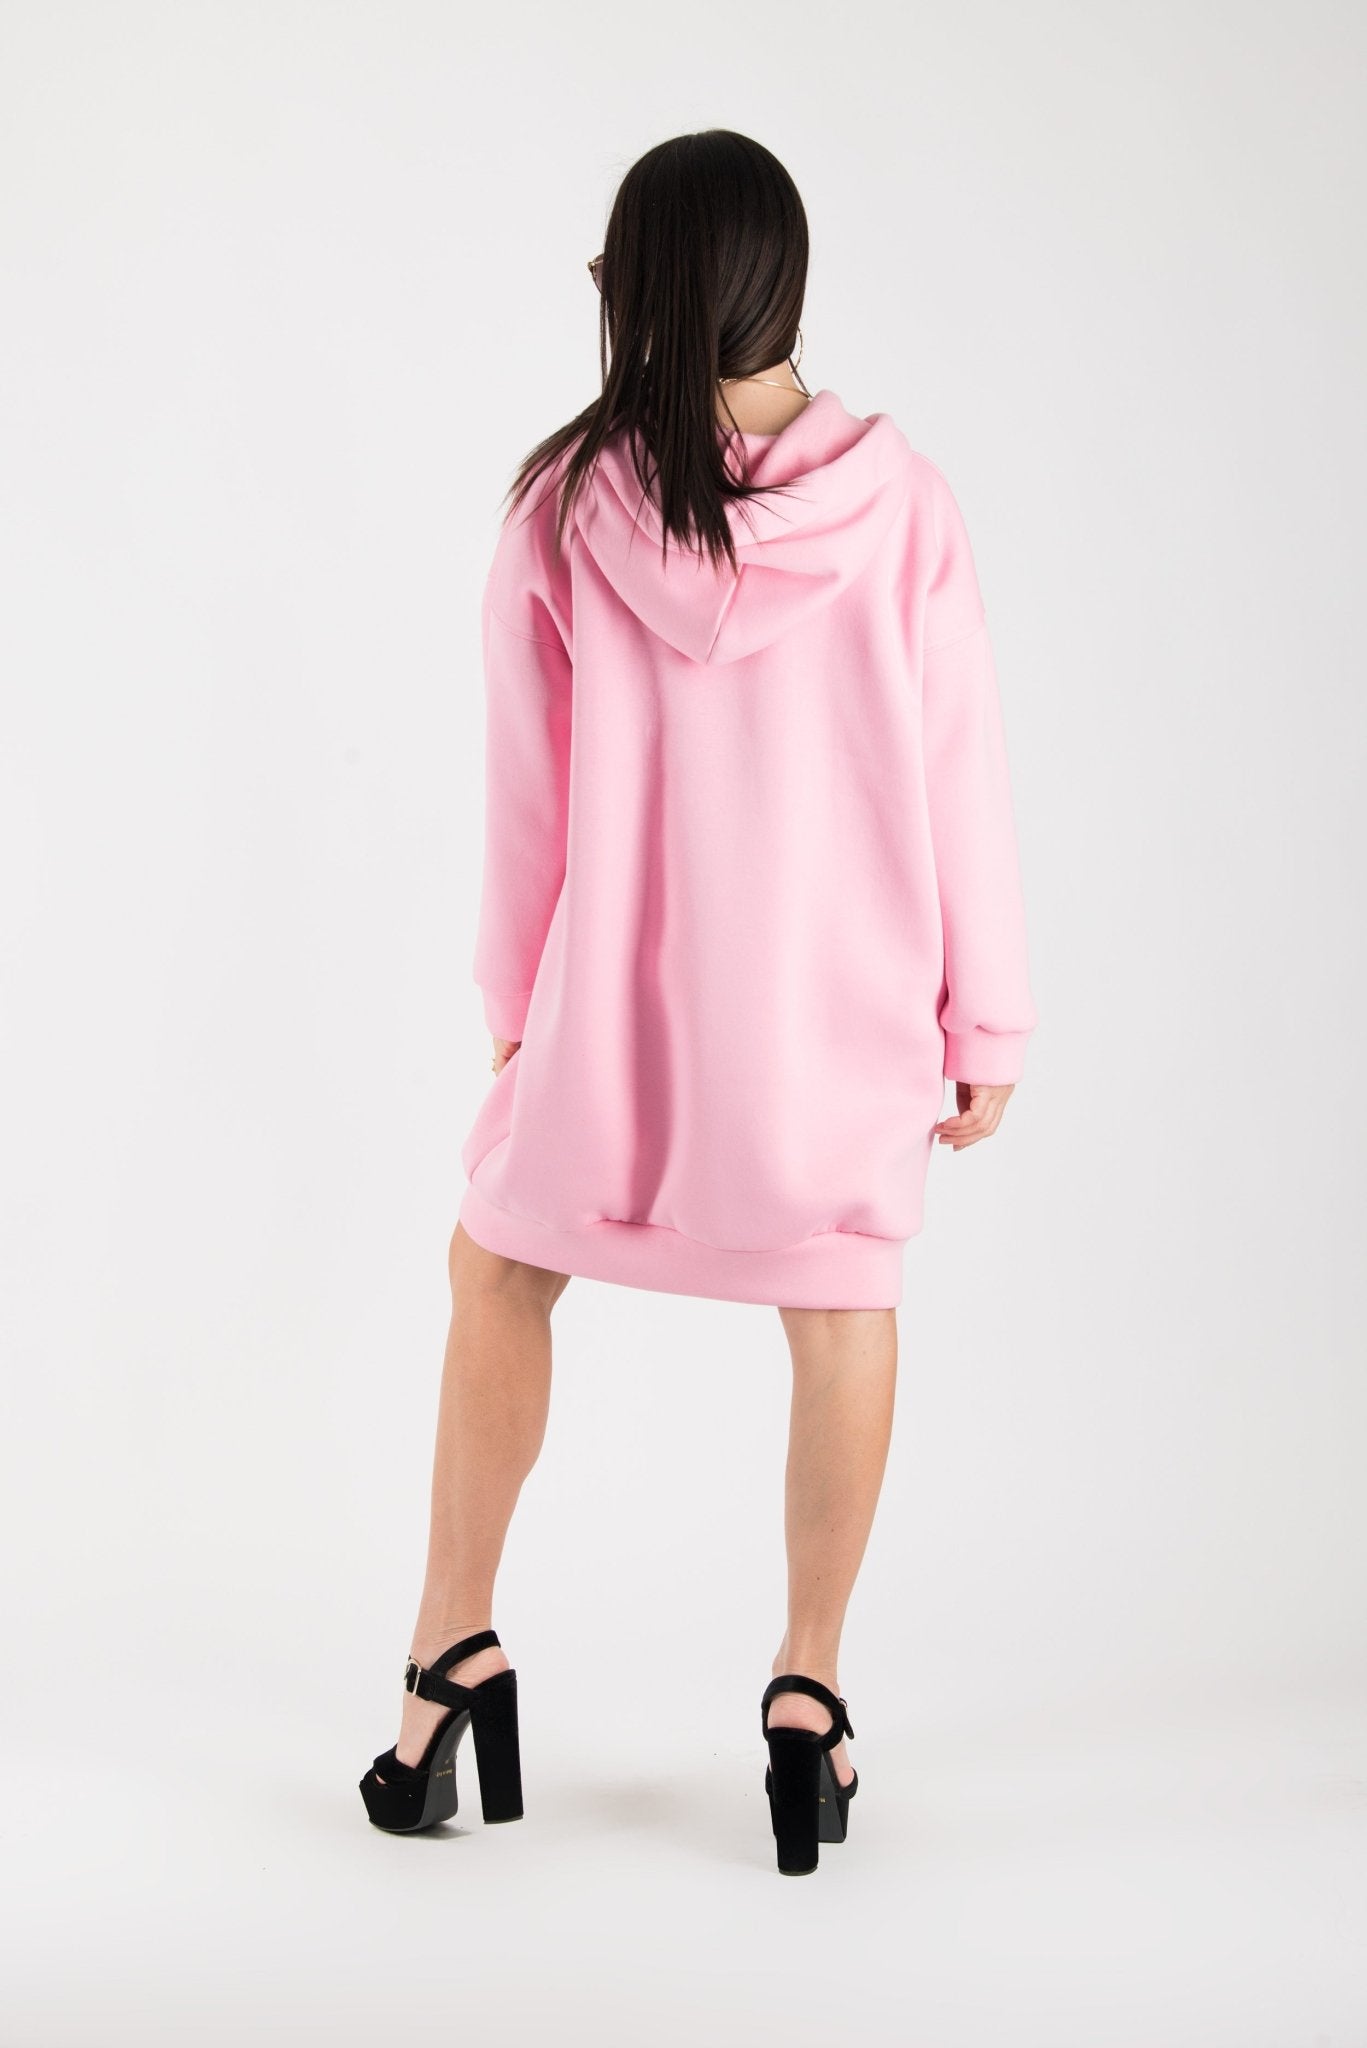 Sweatshirt Hooded Pink Dress EugFashion 